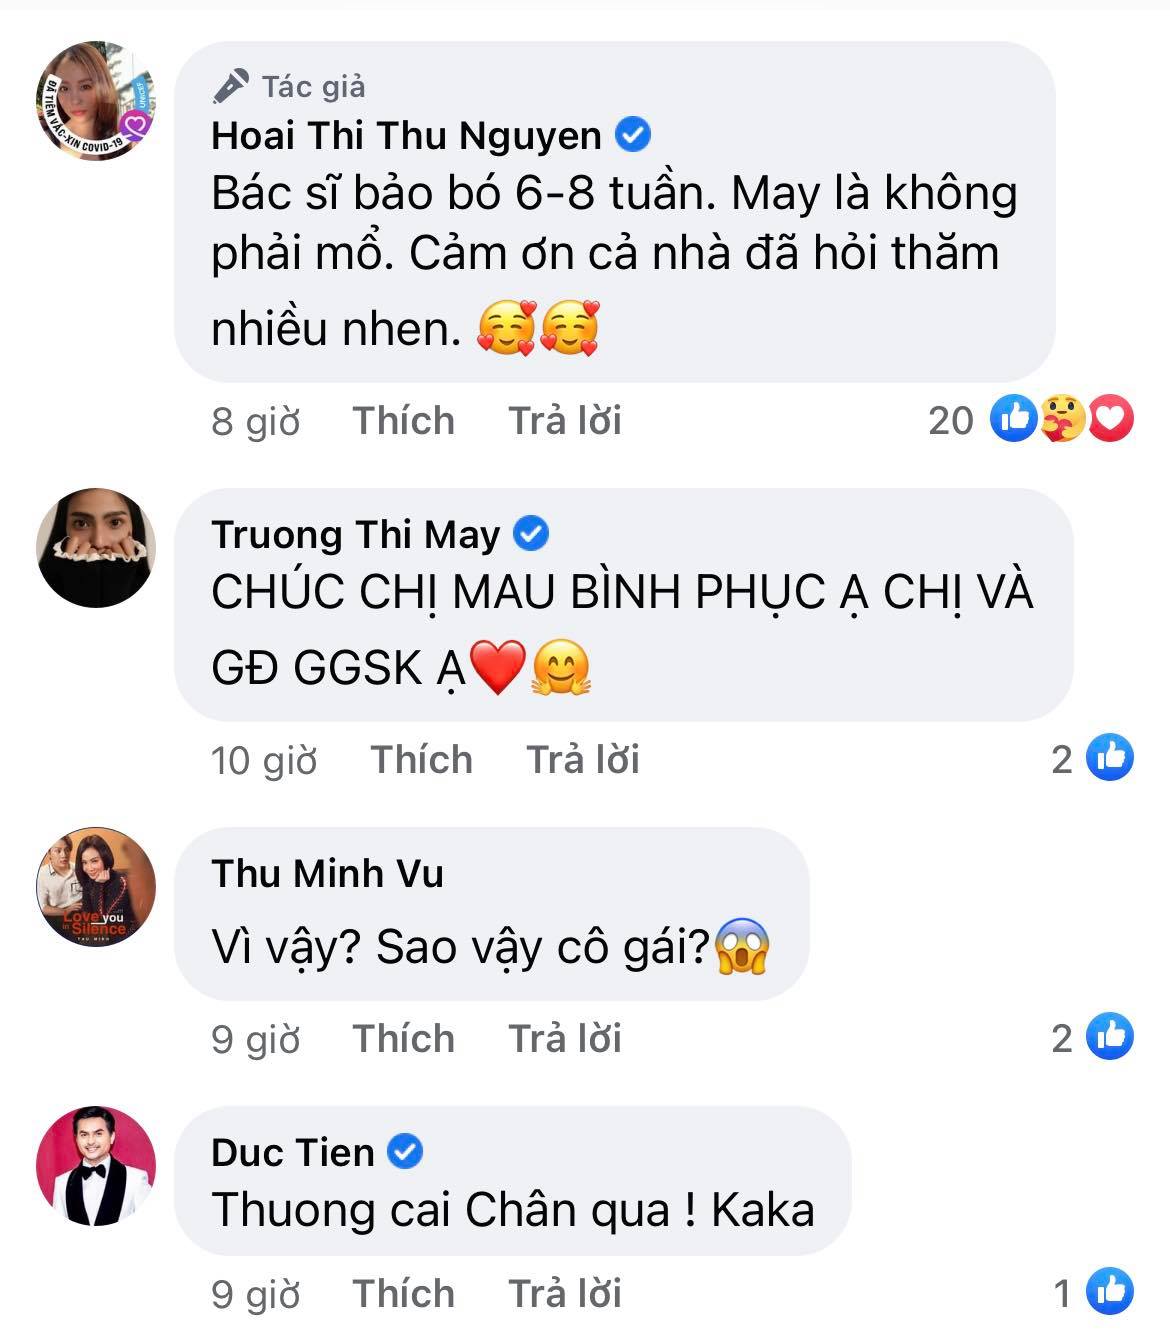 Hoa hậu Thu Hoài gặp chấn thương nghiêm trọng ở Mỹ, Hari Won - Mai Hồ cùng dàn sao Việt đồng loạt lo lắng hỏi thăm - Ảnh 4.